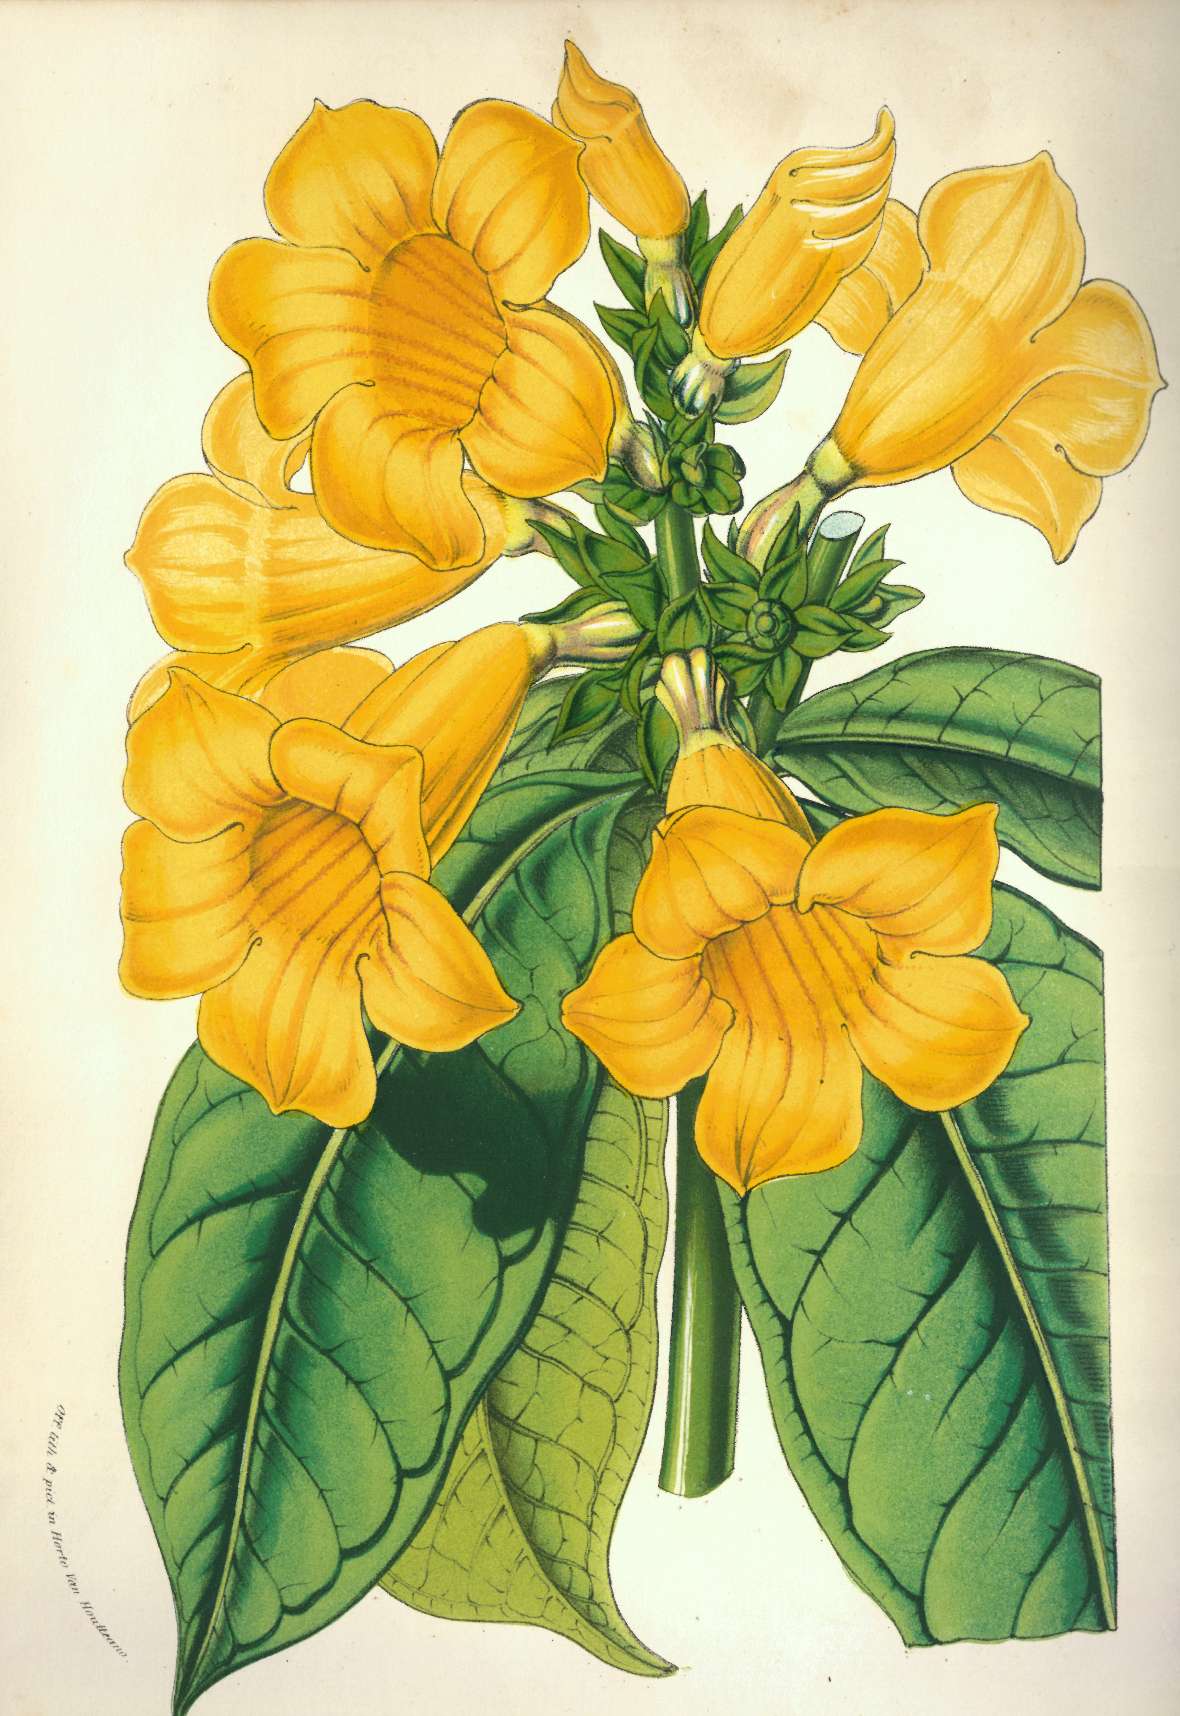 zu sehen ist eine Pflanze mit grünem Stängel und grünen Blättern und gelben, trompetenförmigen Blüten